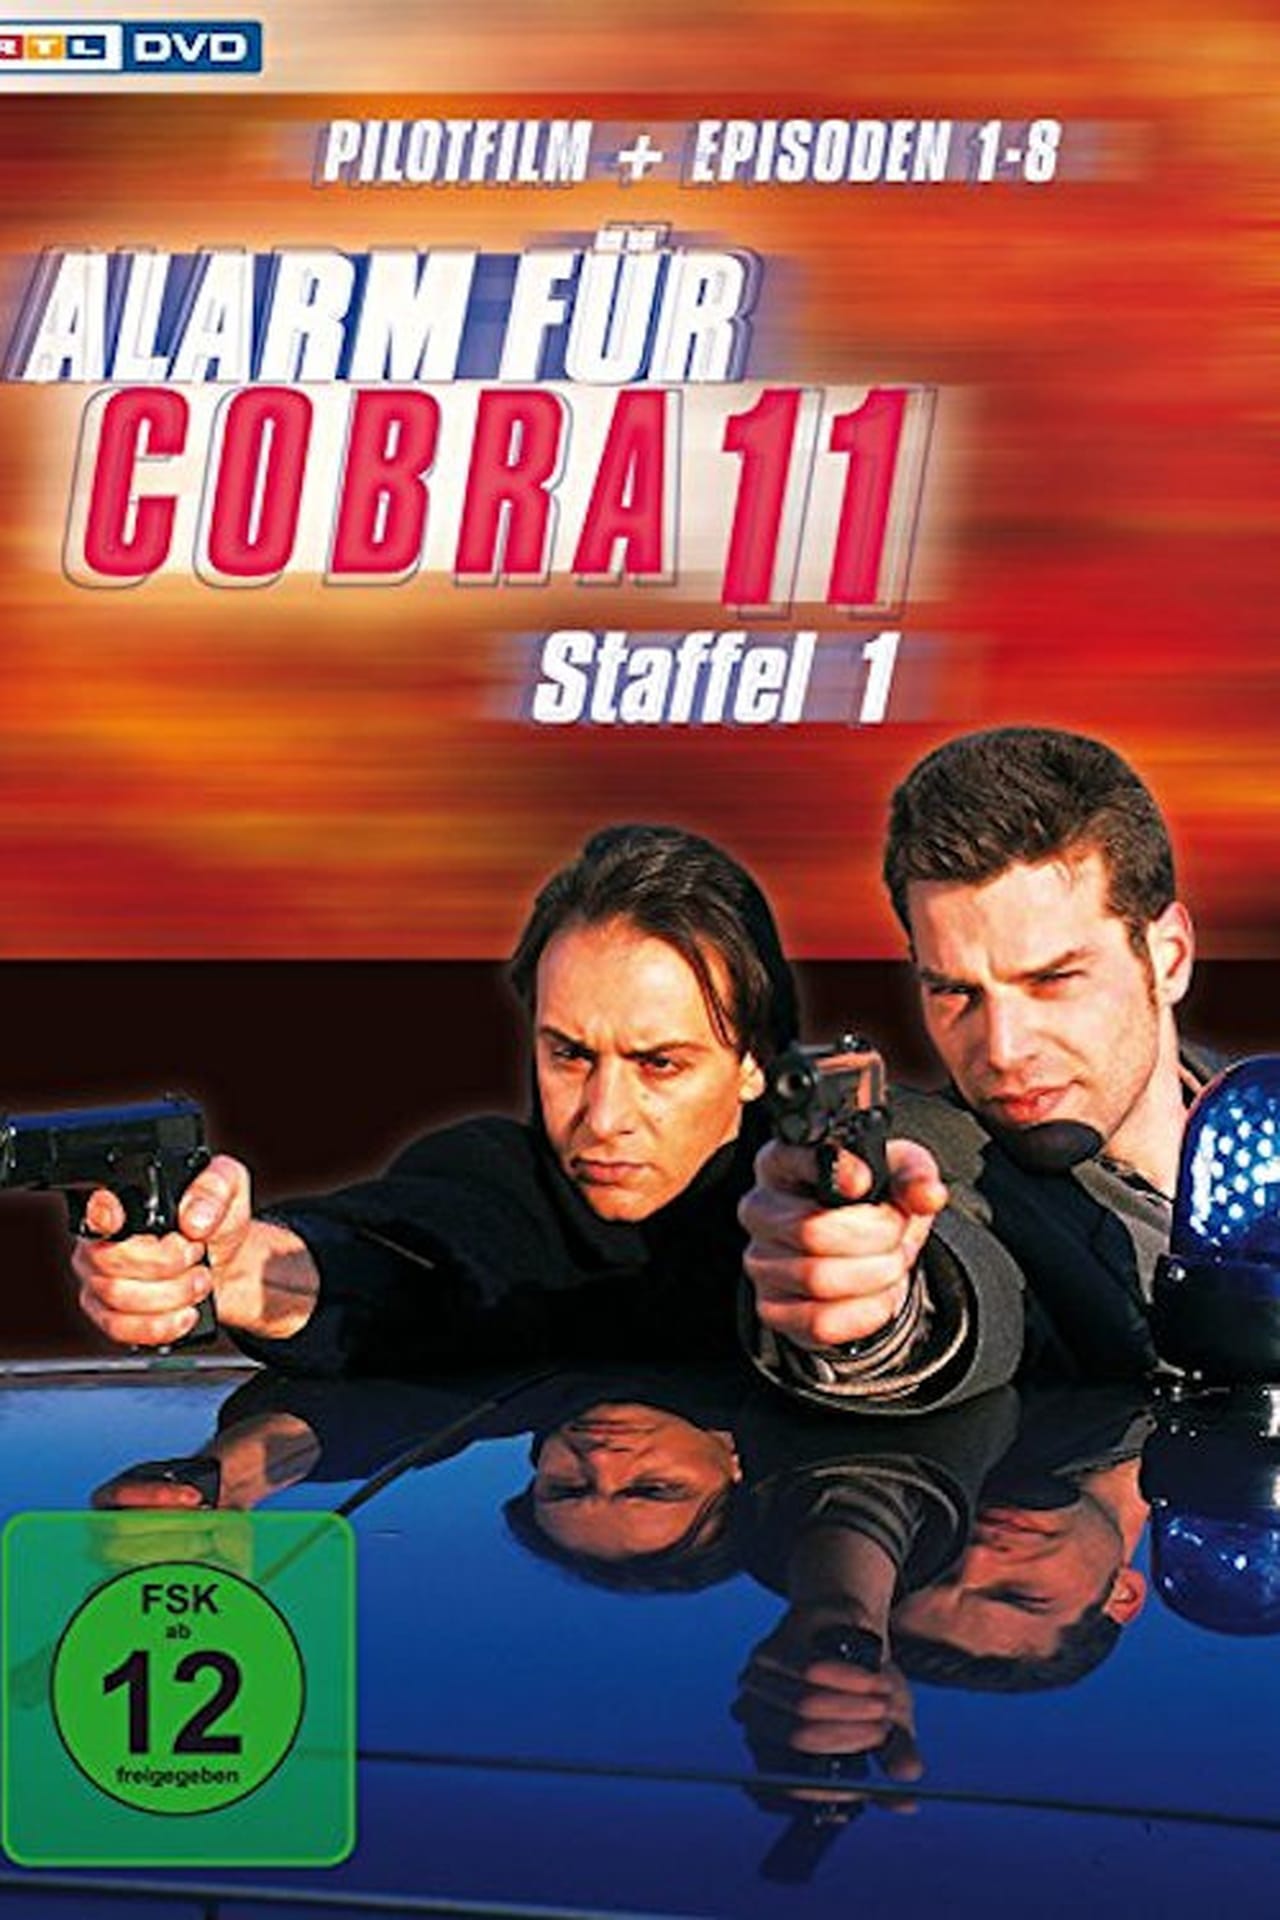 Alarm For Cobra 11: The Motorway Police (1996)